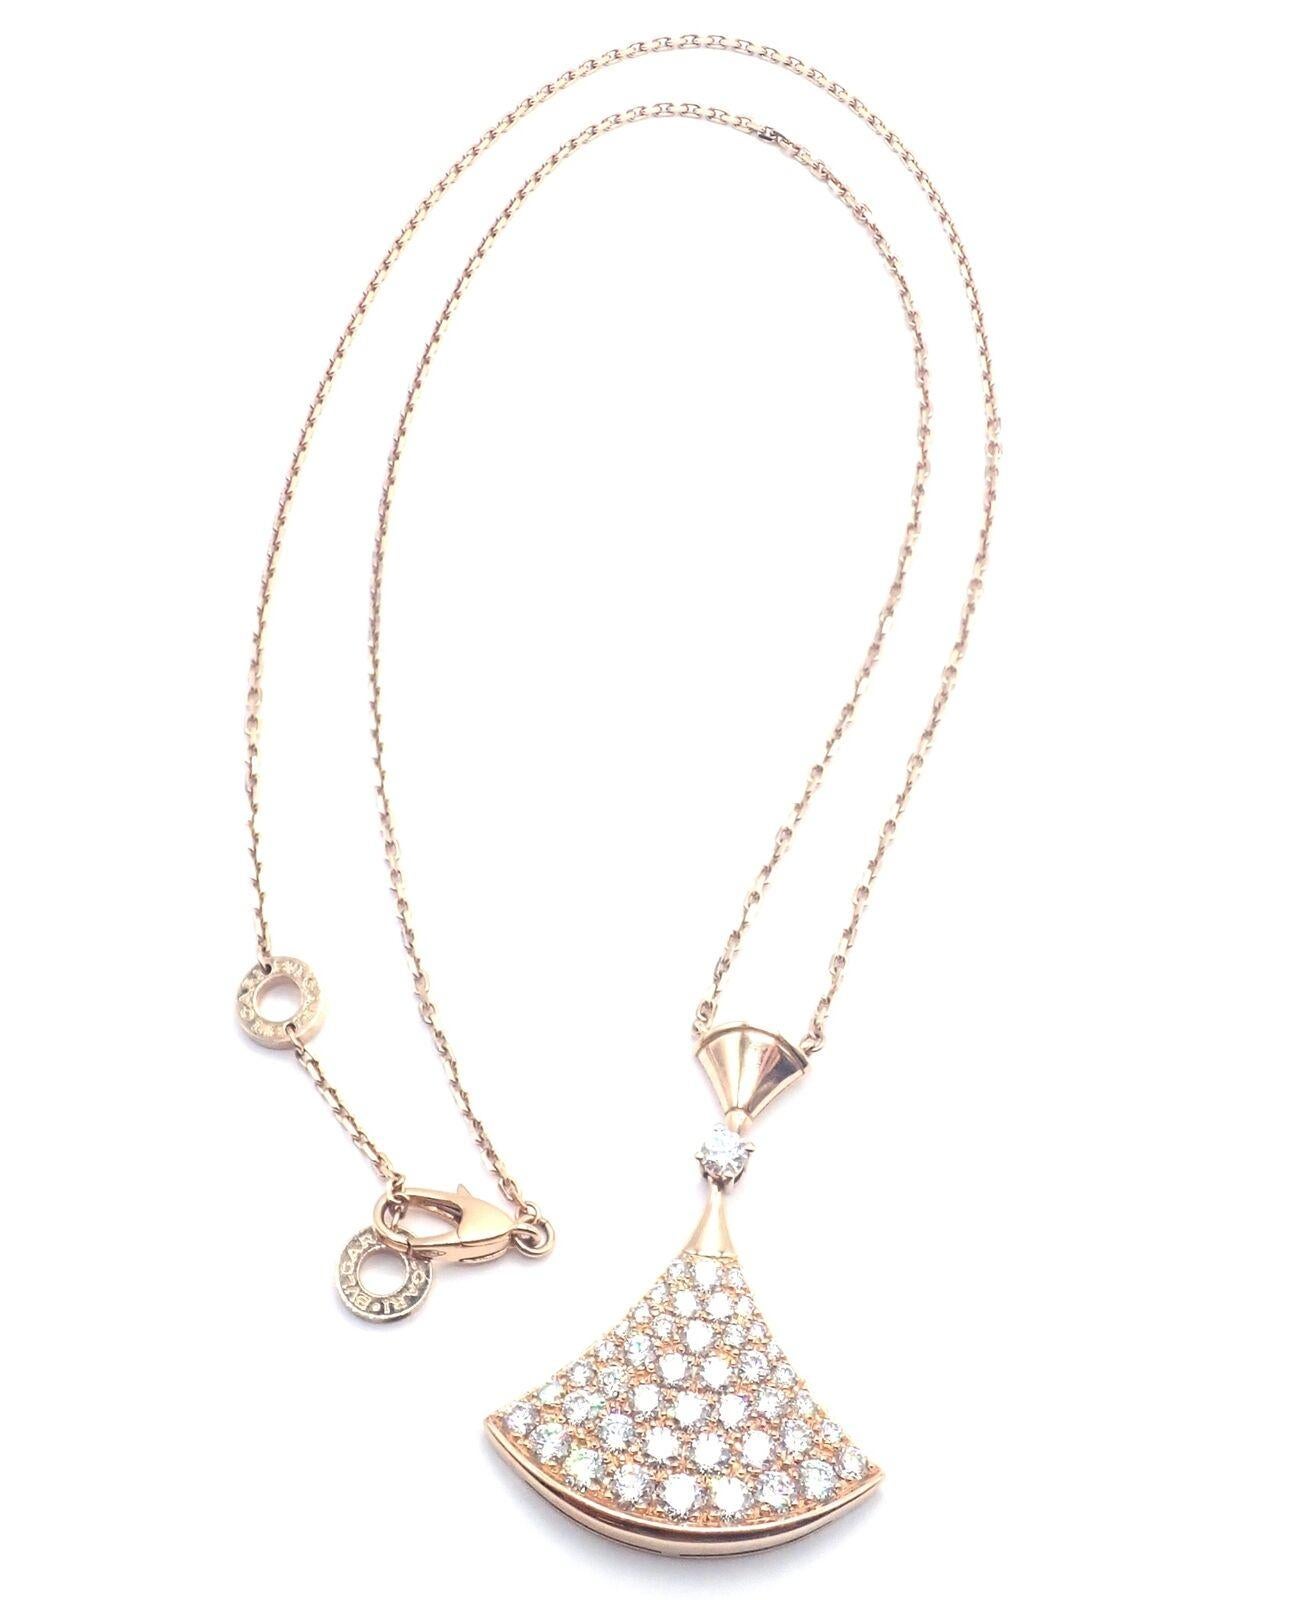 Brilliant Cut Bvlgari Bulgari Diva Dream Diamond Large Rose Gold Pendant Necklace For Sale